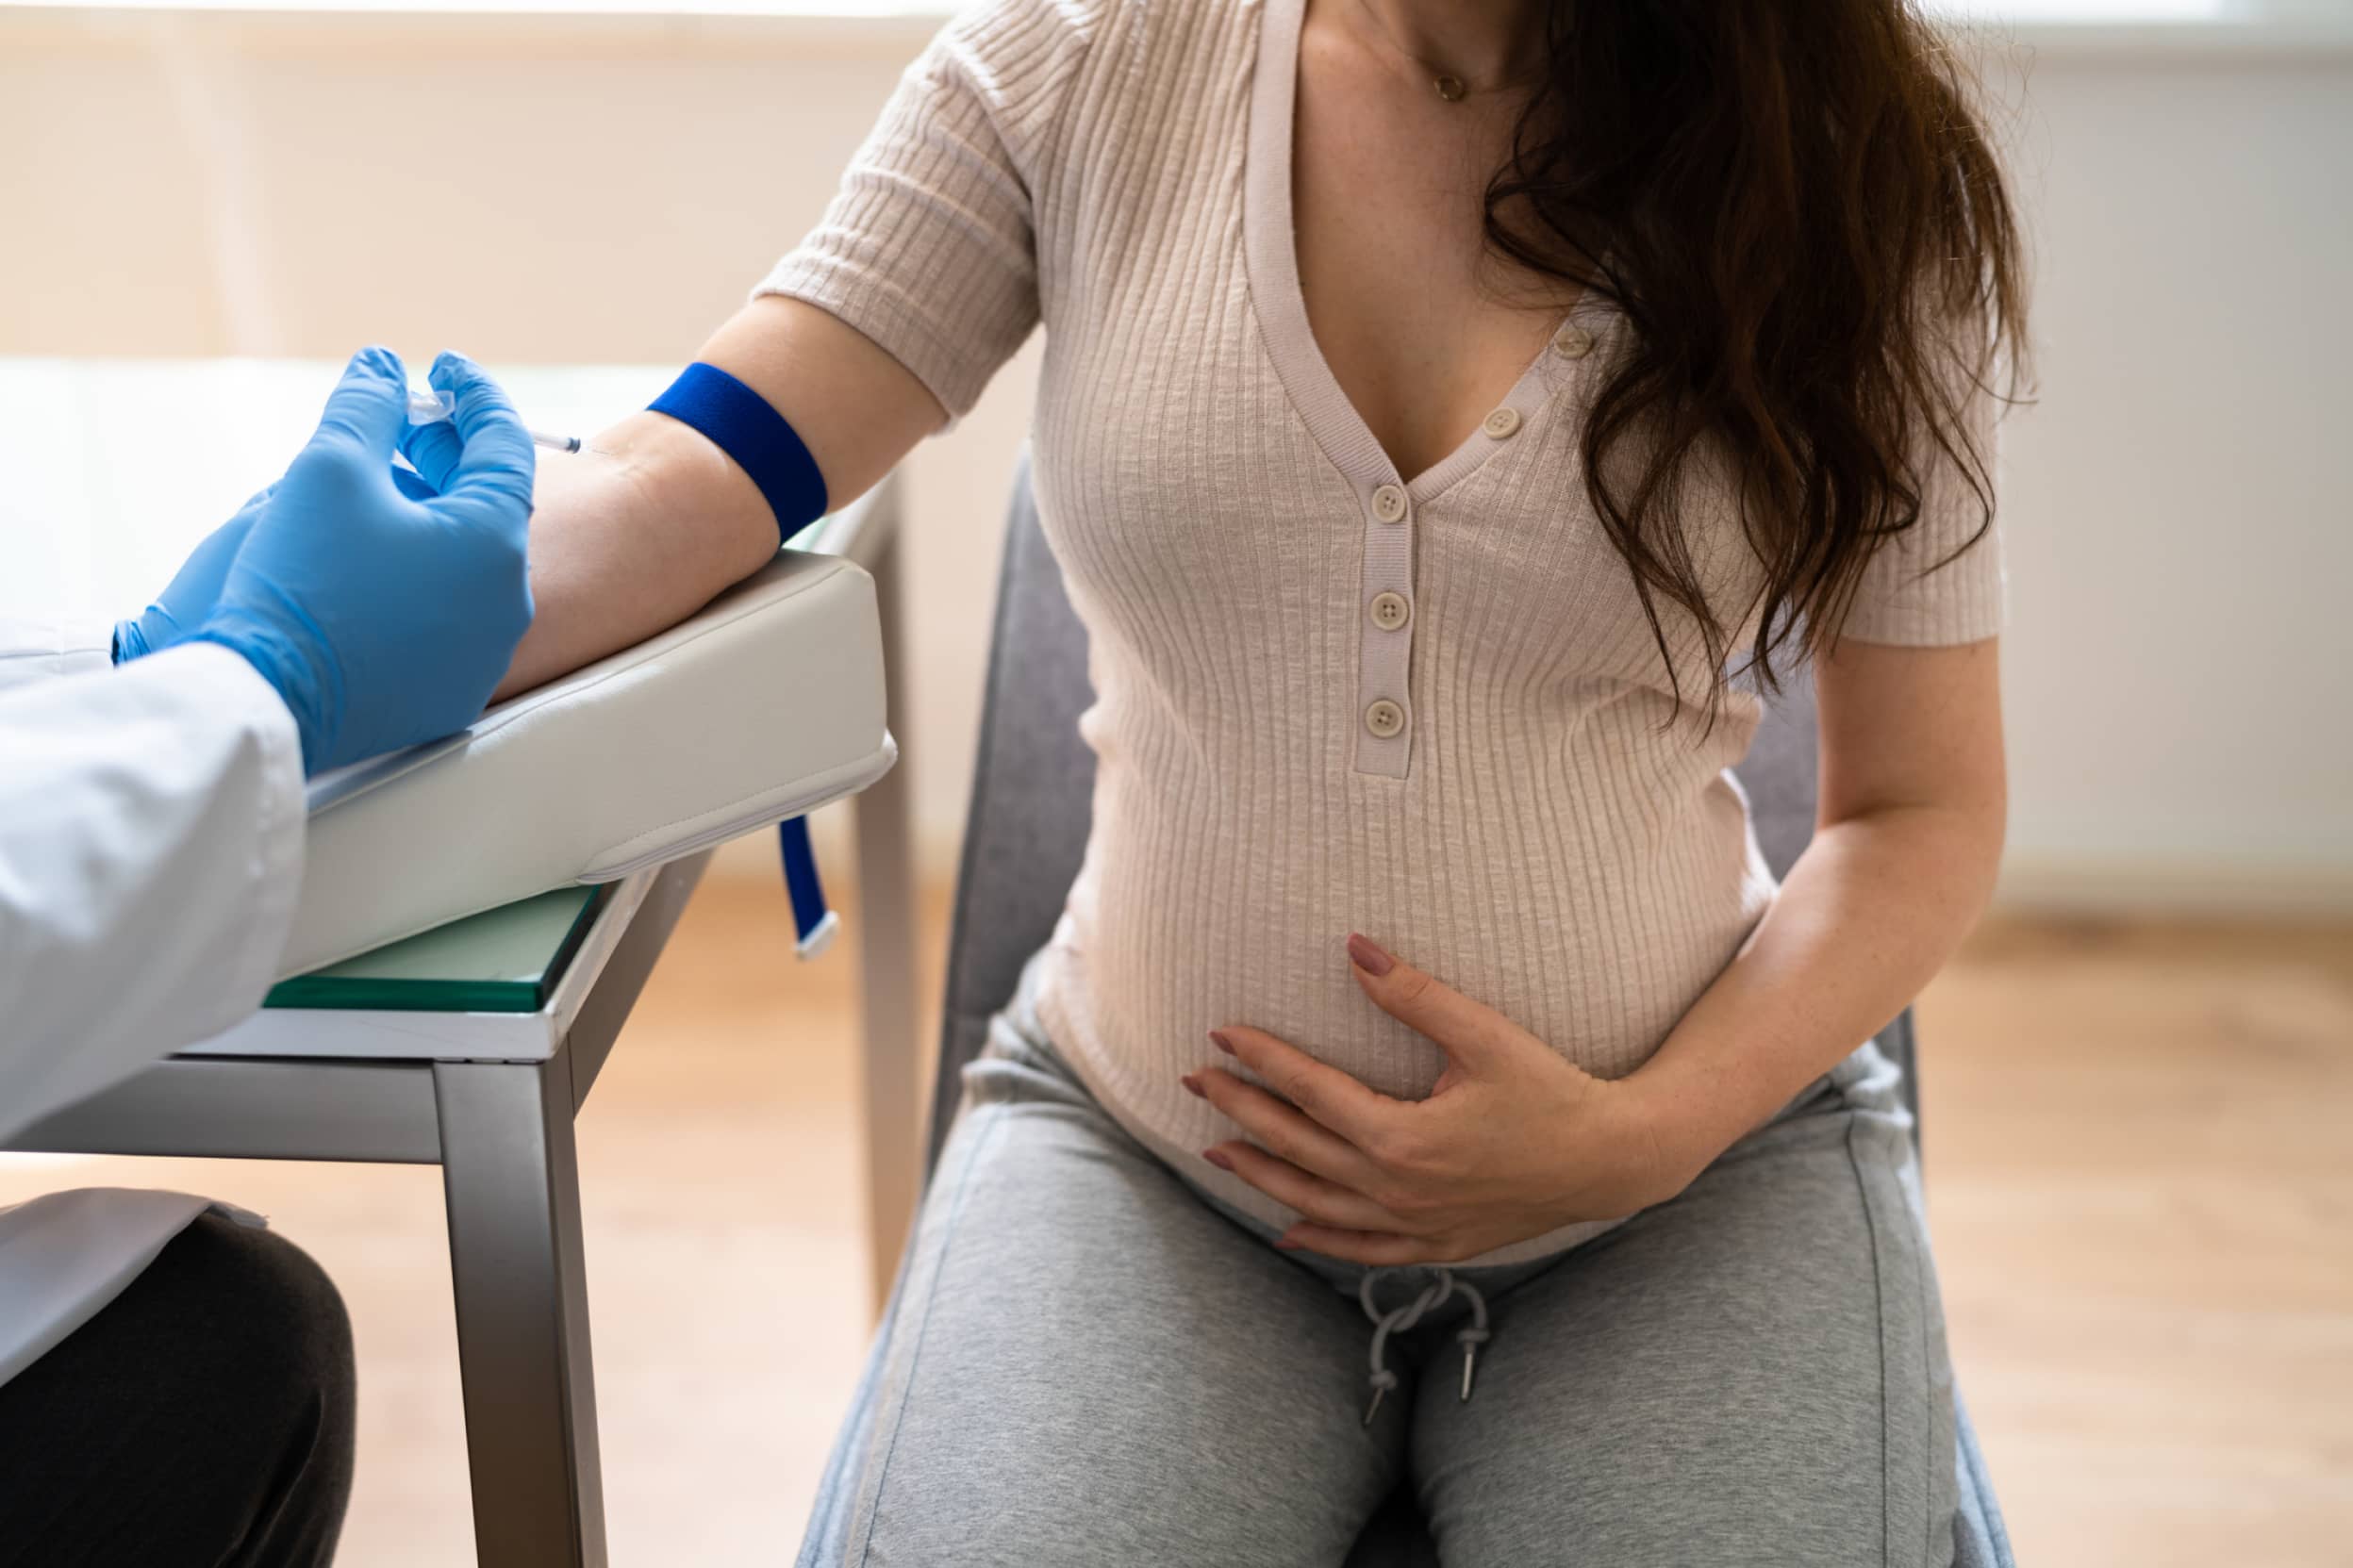 Grupo sanguíneo en el embarazo: ¿Cuál trae problemas?